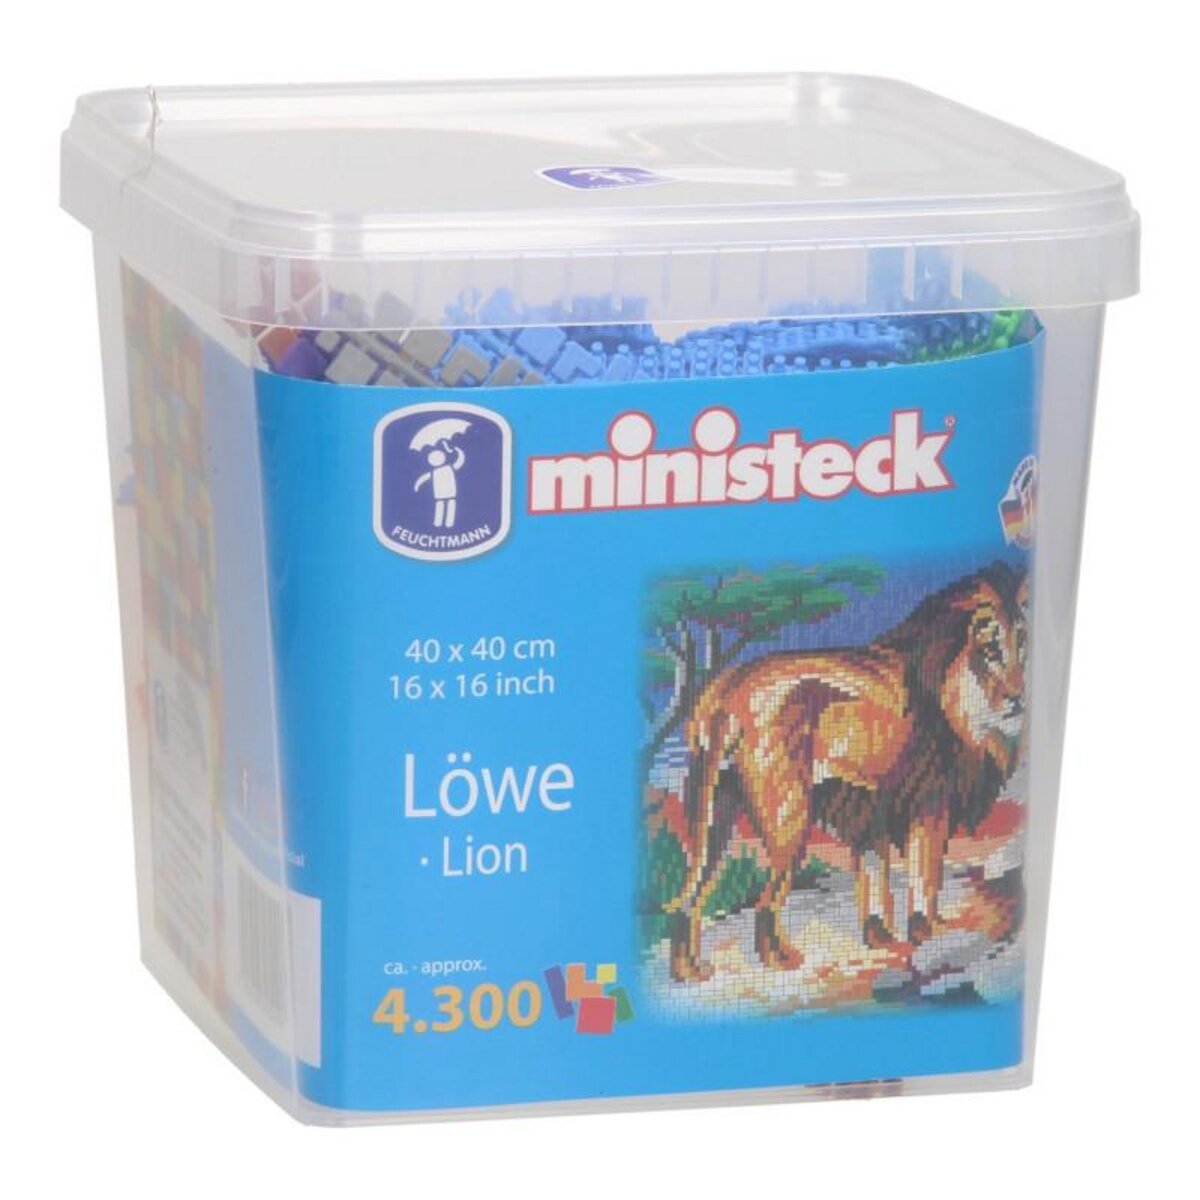 MINISTECK Ministeck Lion XXL Bucket, 4400 pcs.